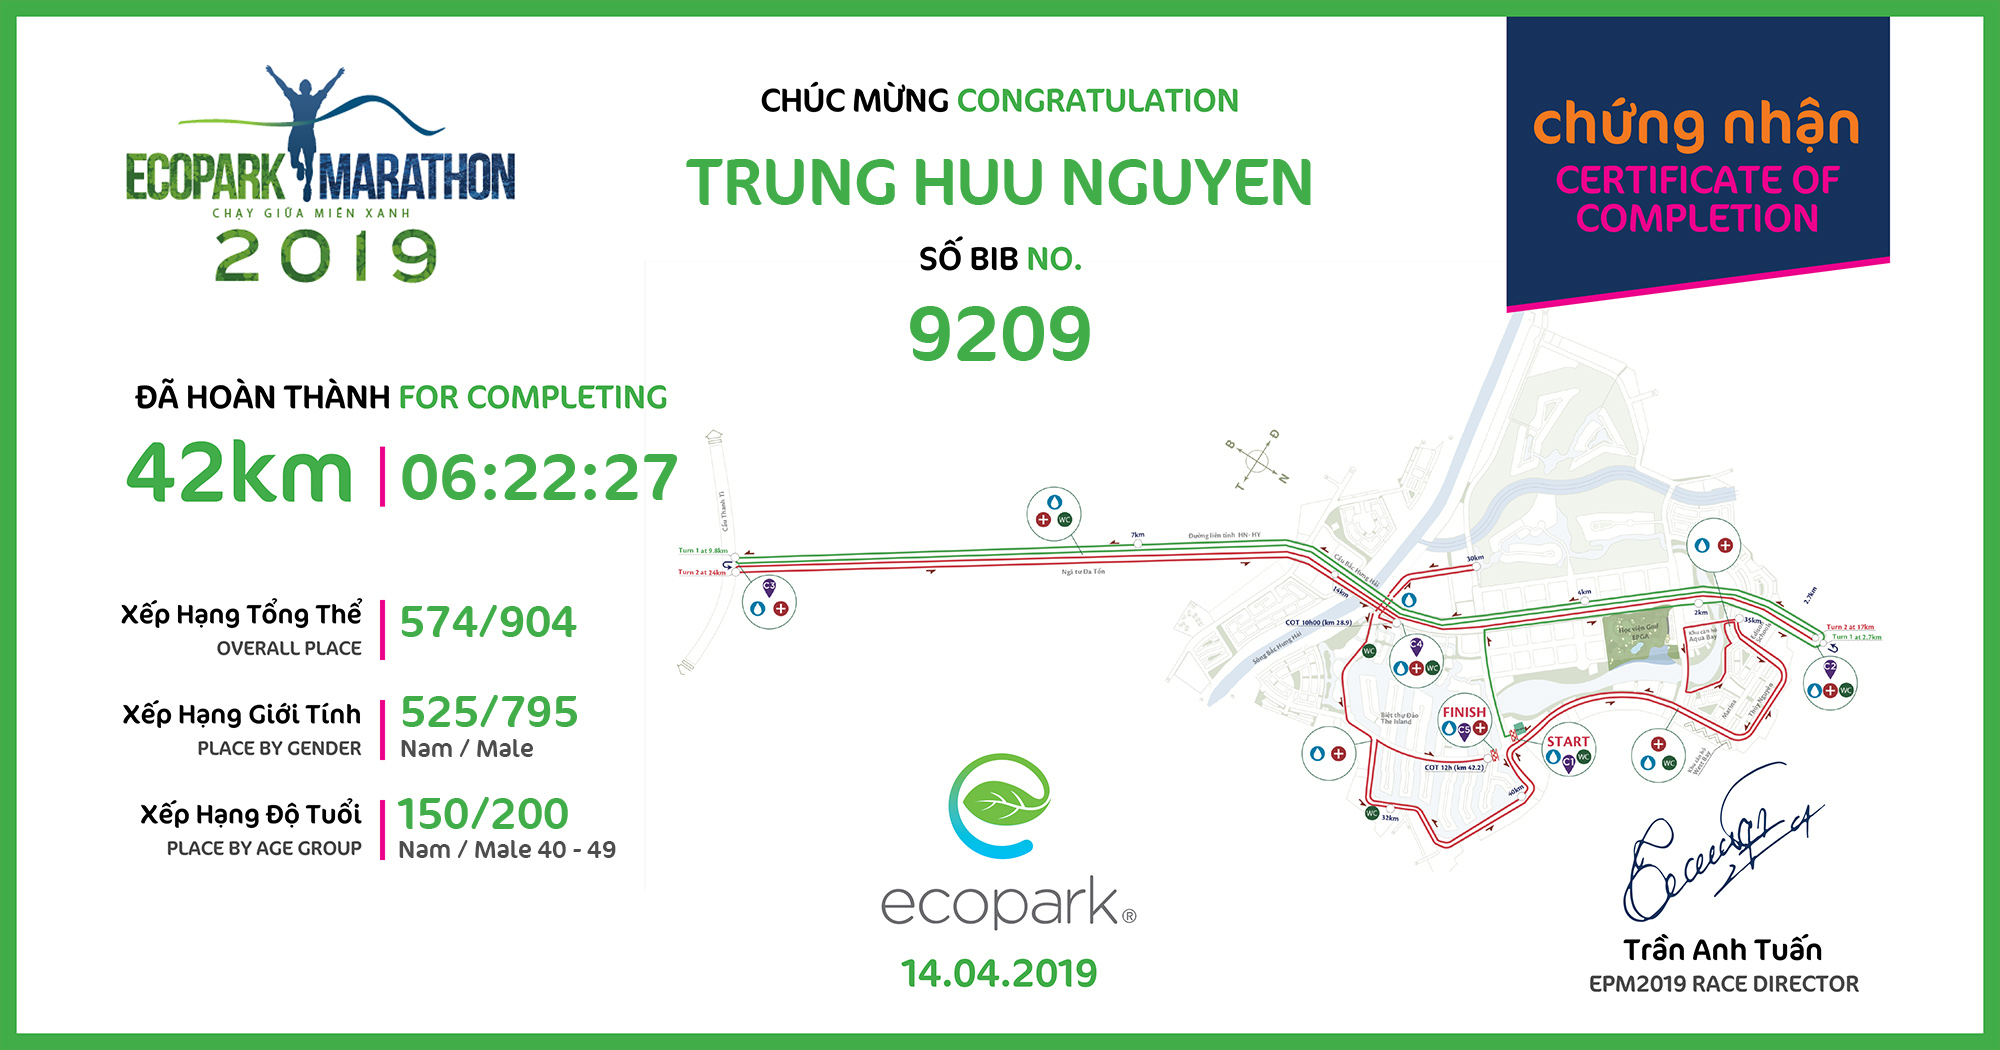 9209 - Trung Huu Nguyen